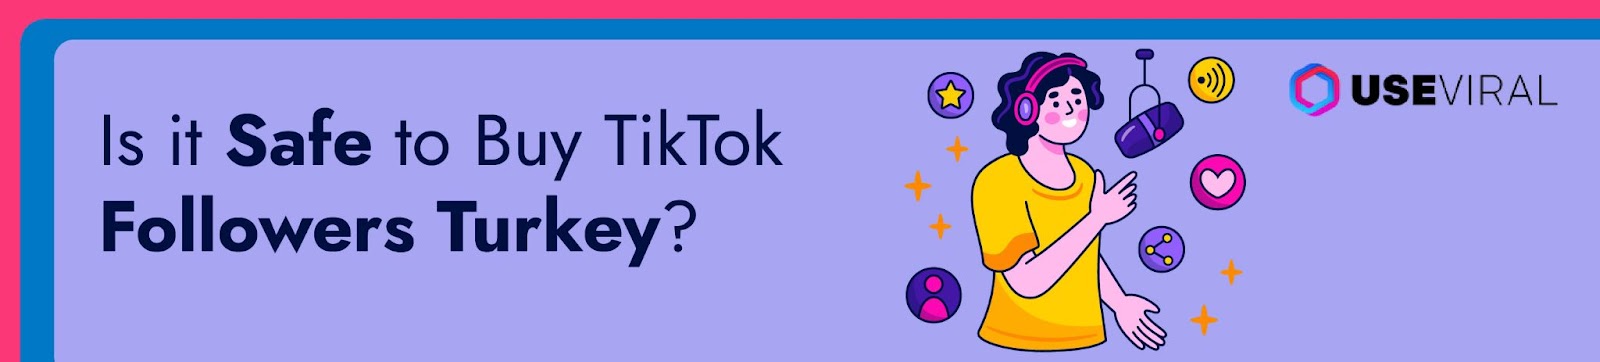 Is it Safe to Buy TikTok Followers Turkey?